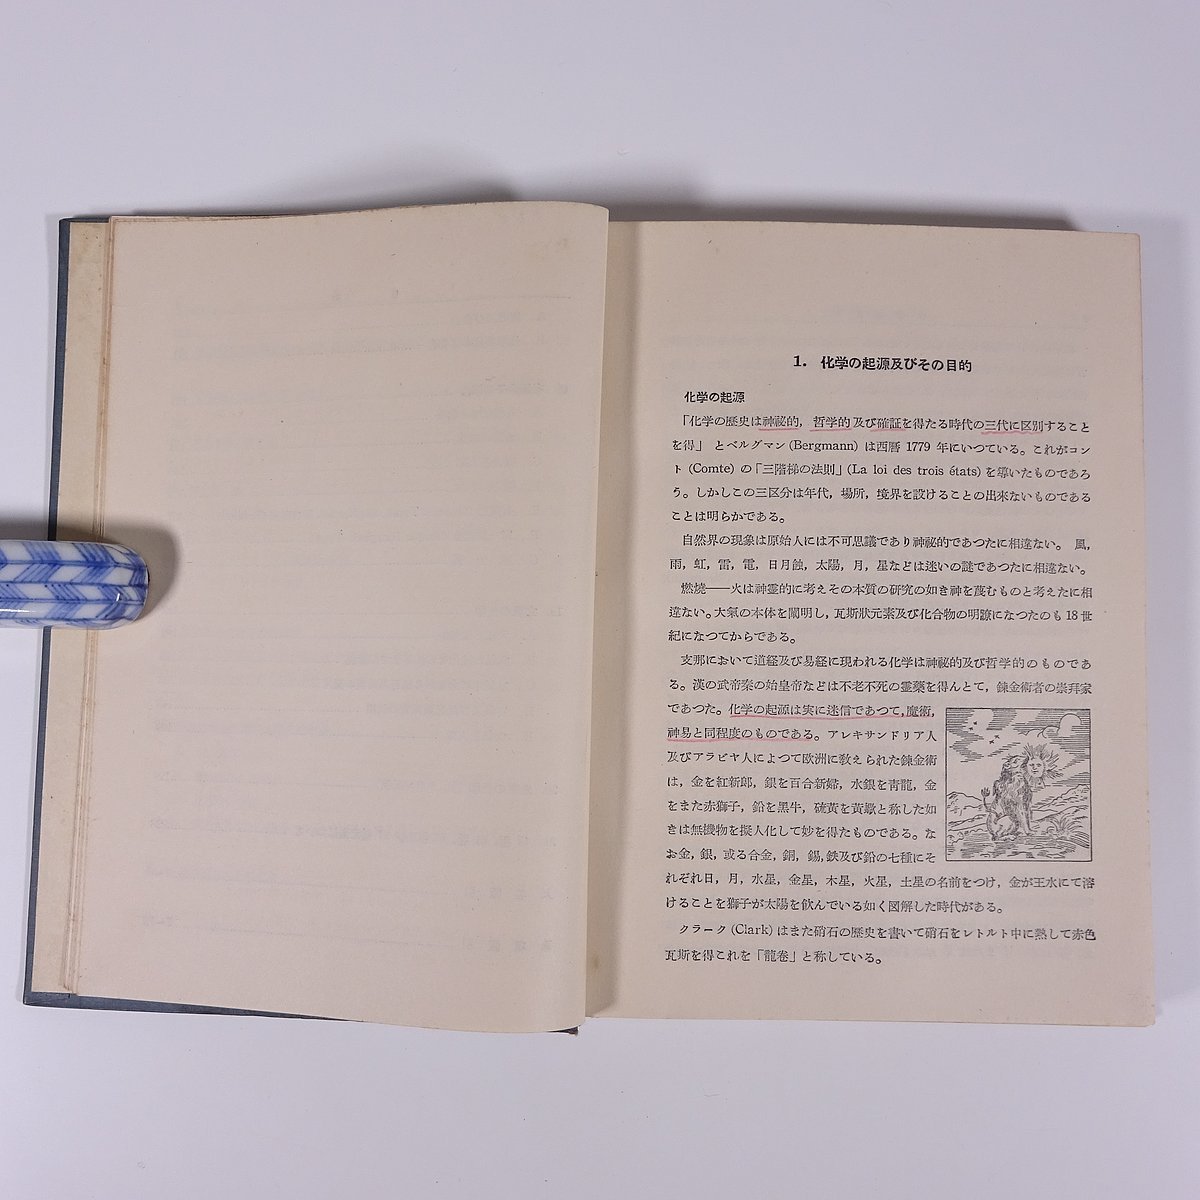  химия мысль история сосна .. сосна объединенный выпускать Showa 2 . год 1950 старинная книга первая версия монография .книга@ химия история * линия . немного 